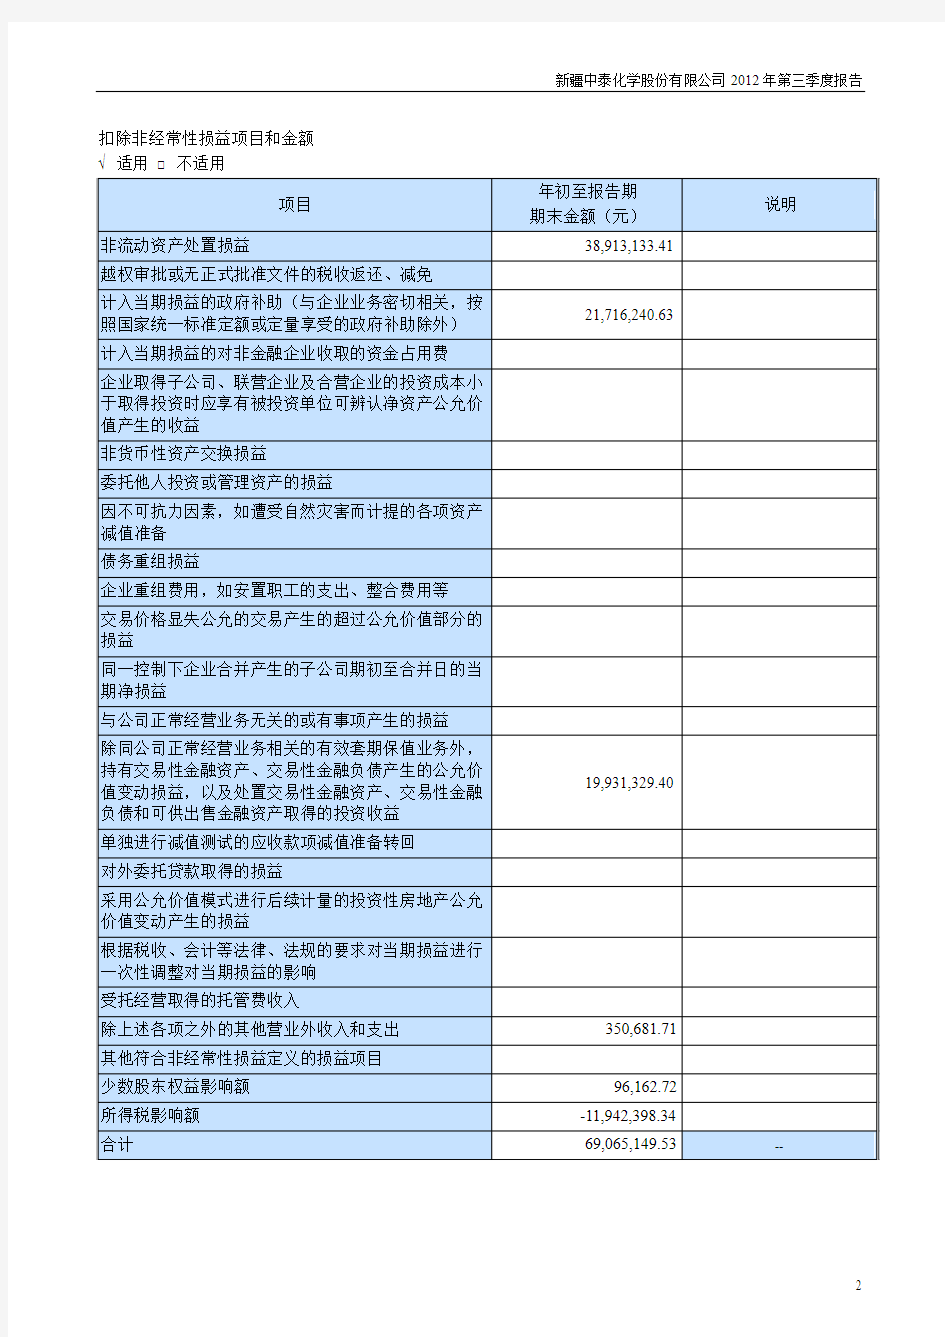 中泰化学股份有限公司2012年第三季度报告